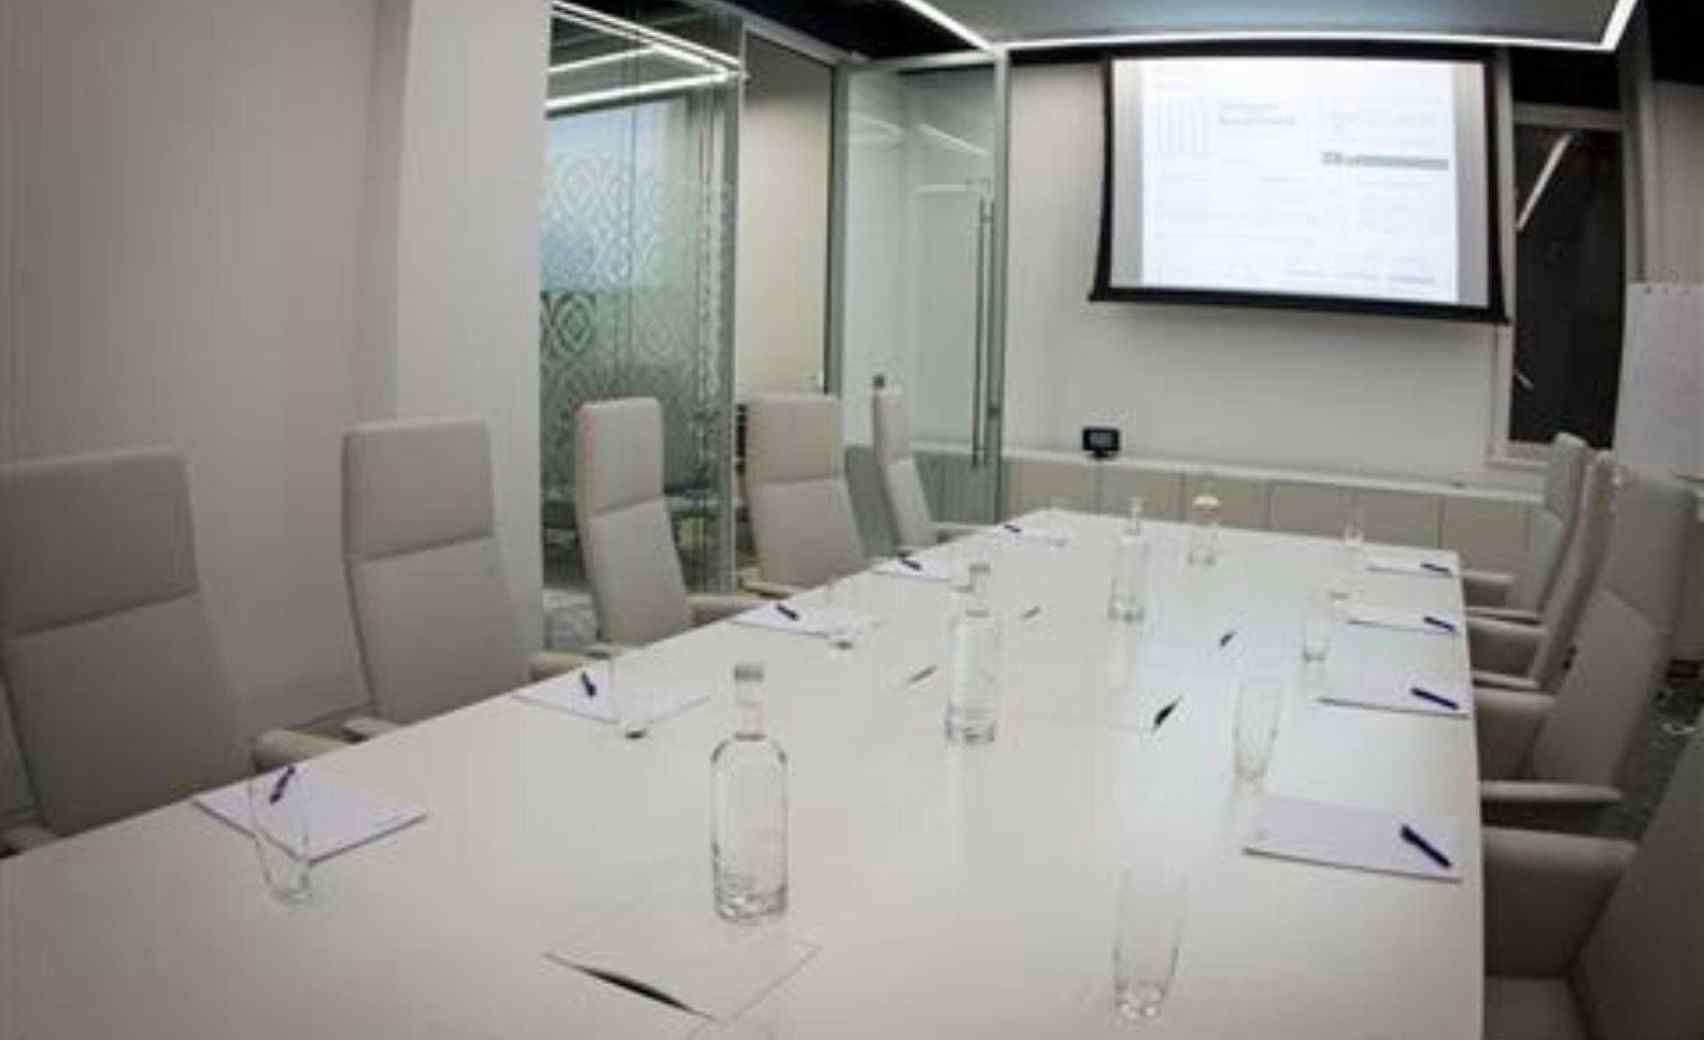 Ground Floor Meeting Room 6.7, 30 Euston Square